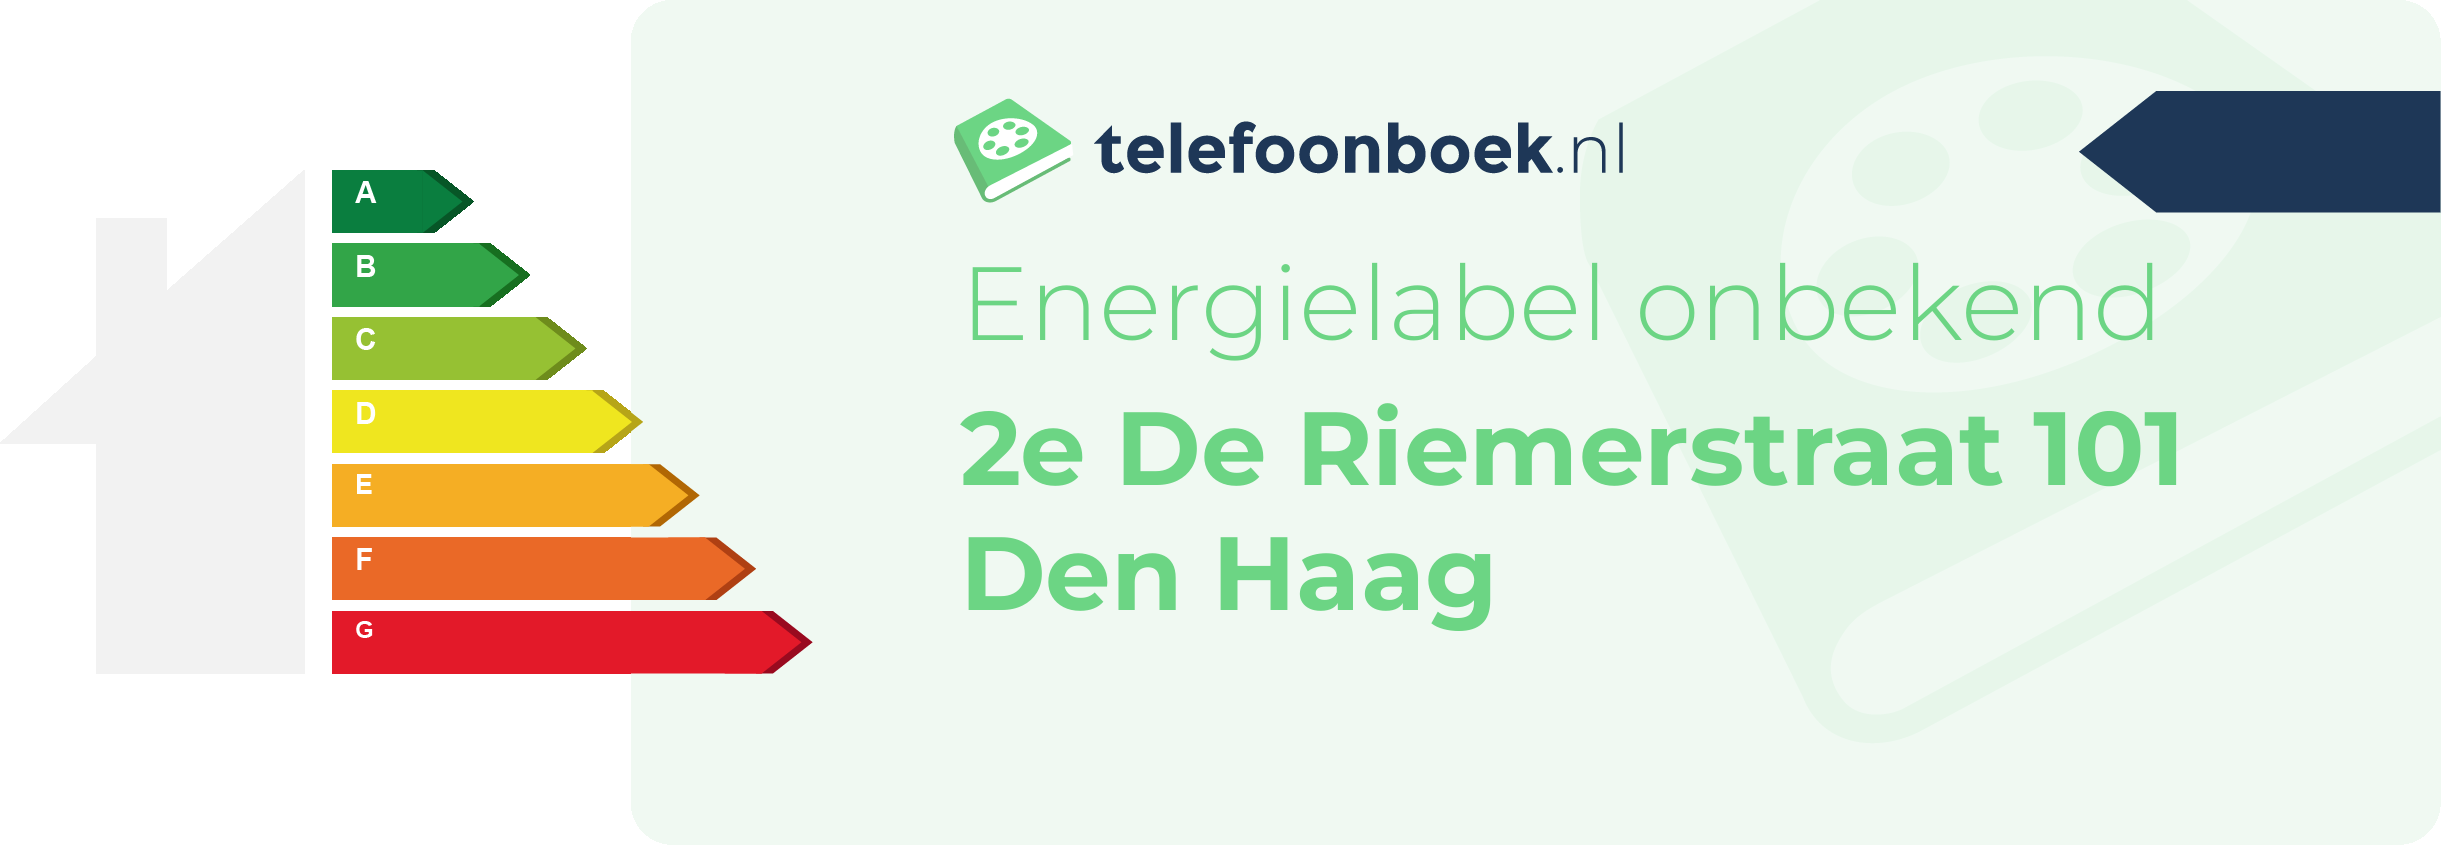 Energielabel 2e De Riemerstraat 101 Den Haag